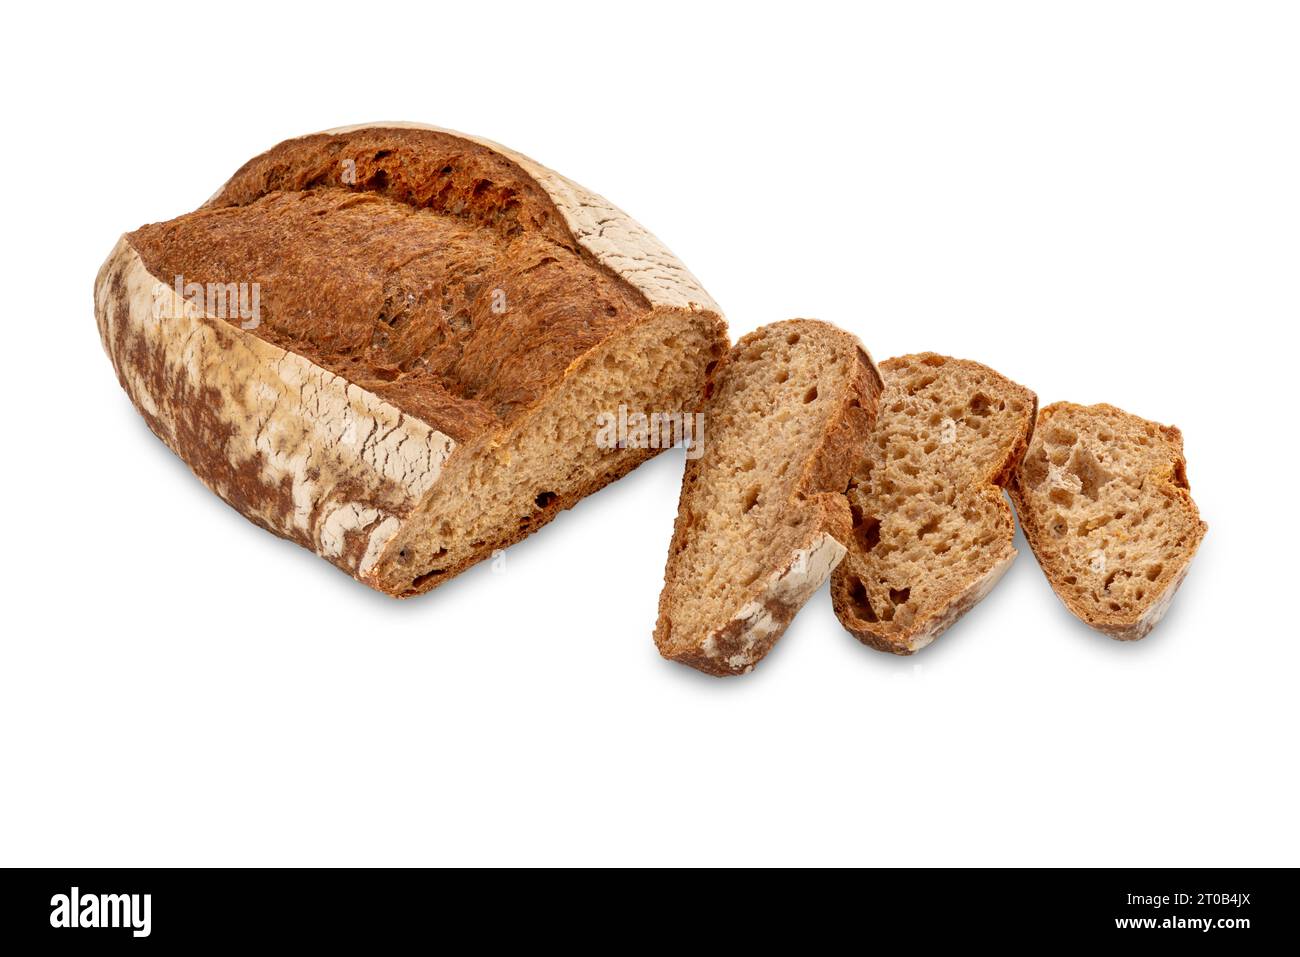 Pane di farina integrale con fette, pane tipico al miccone piemontese, Italia, isolato su bianco con percorso di ritaglio incluso Foto Stock